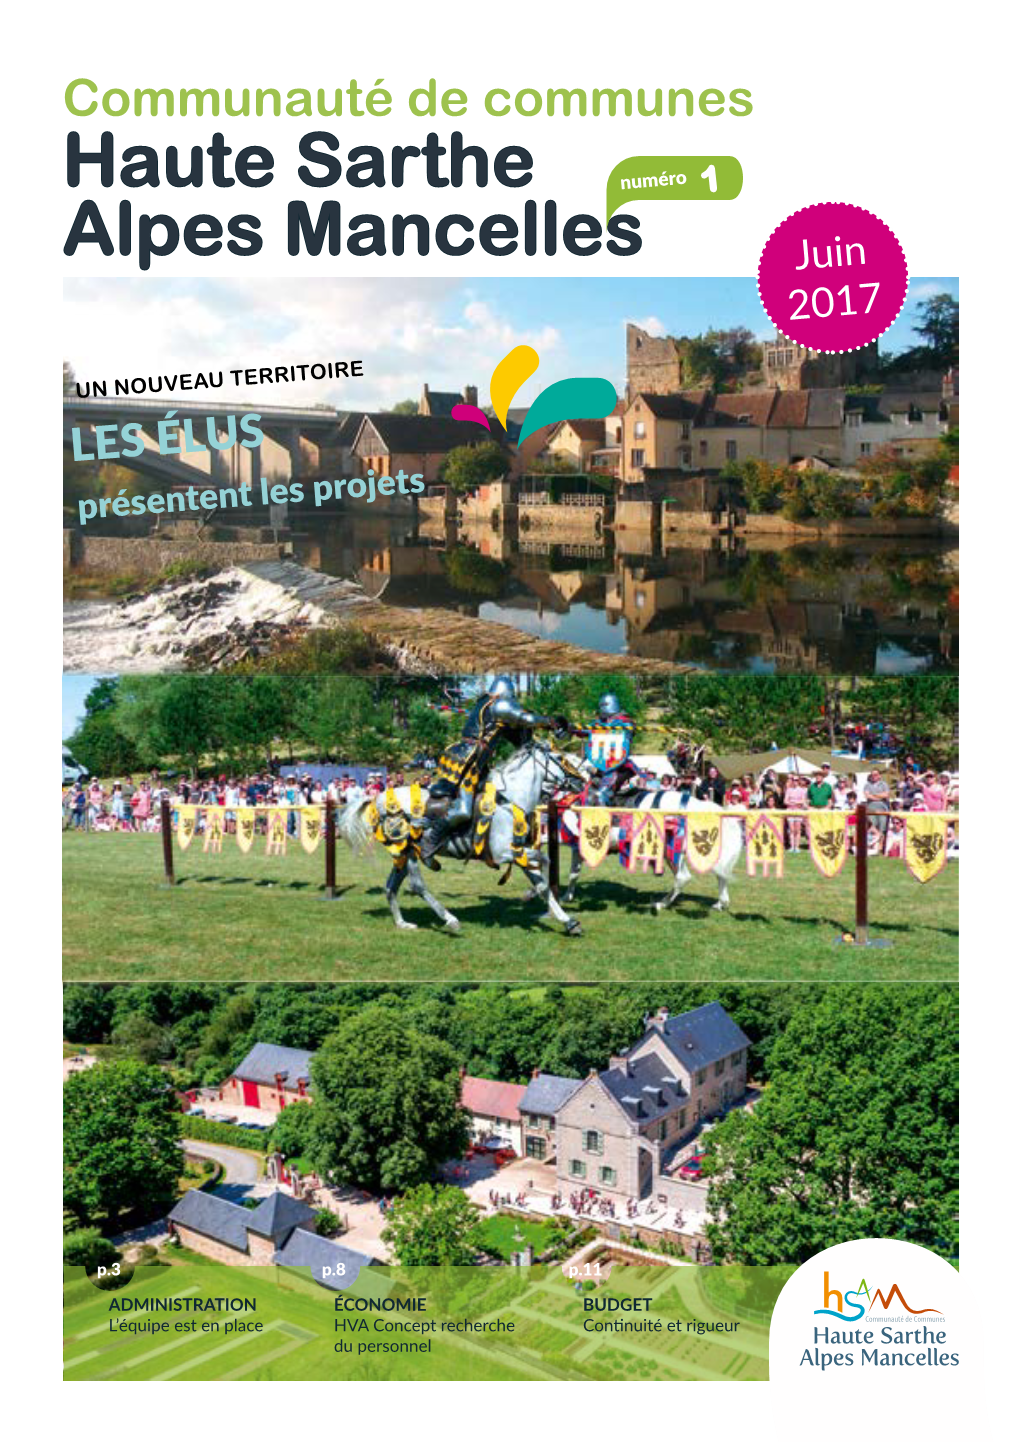 Communauté De Communes Haute Sarthe Alpes Mancelles Maire De Bourg-Le-Roi